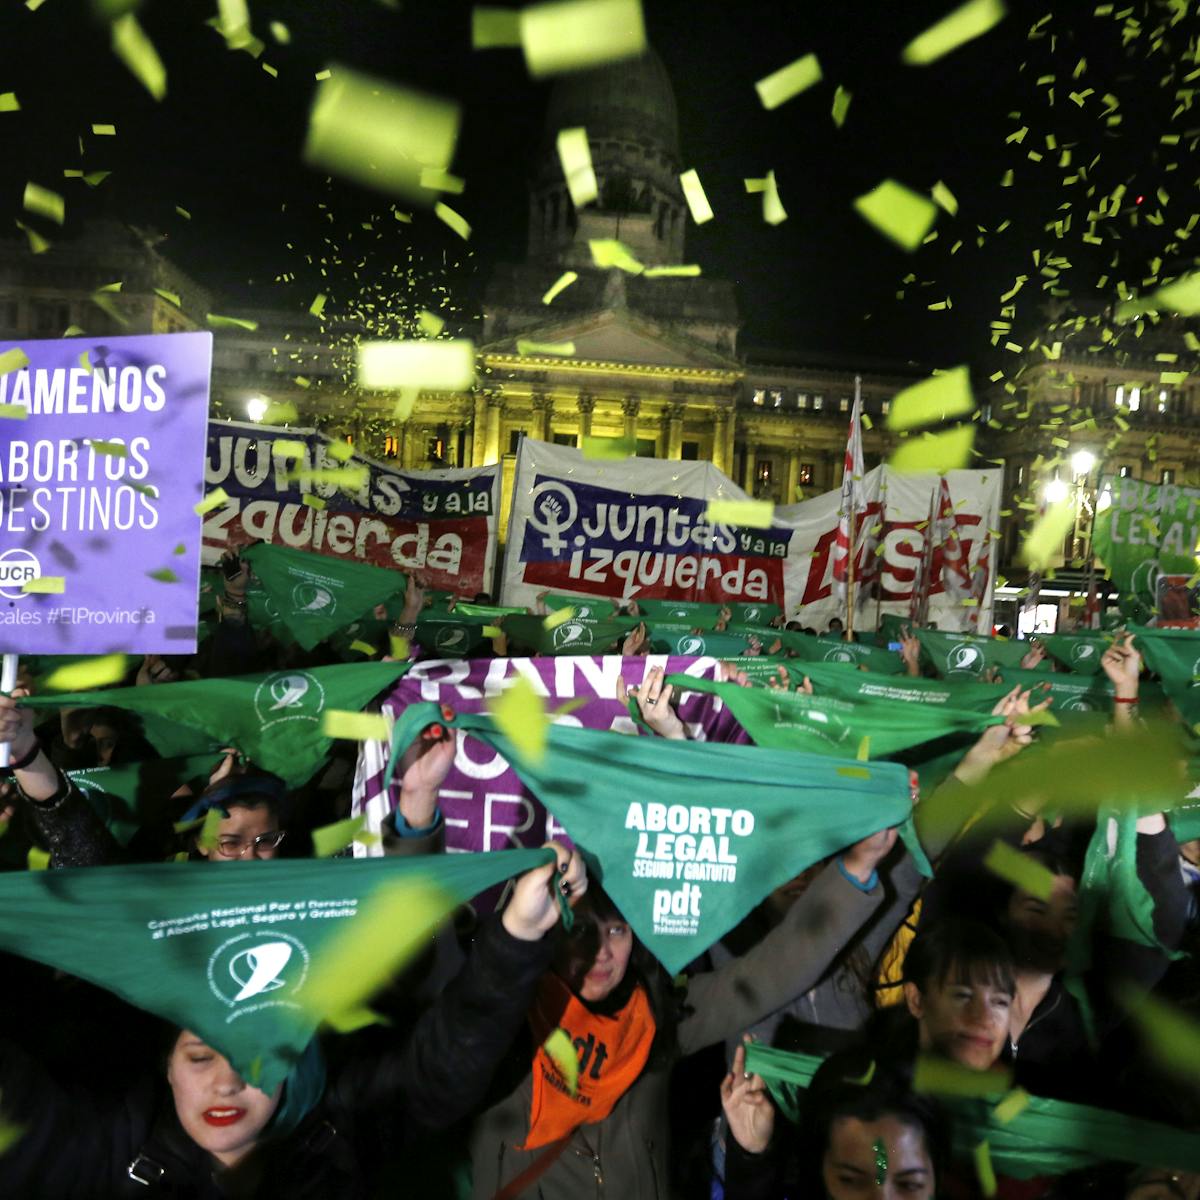 Frente a movilización masiva para el aborto legal en Argentina, la Iglesia  católica modera su tono